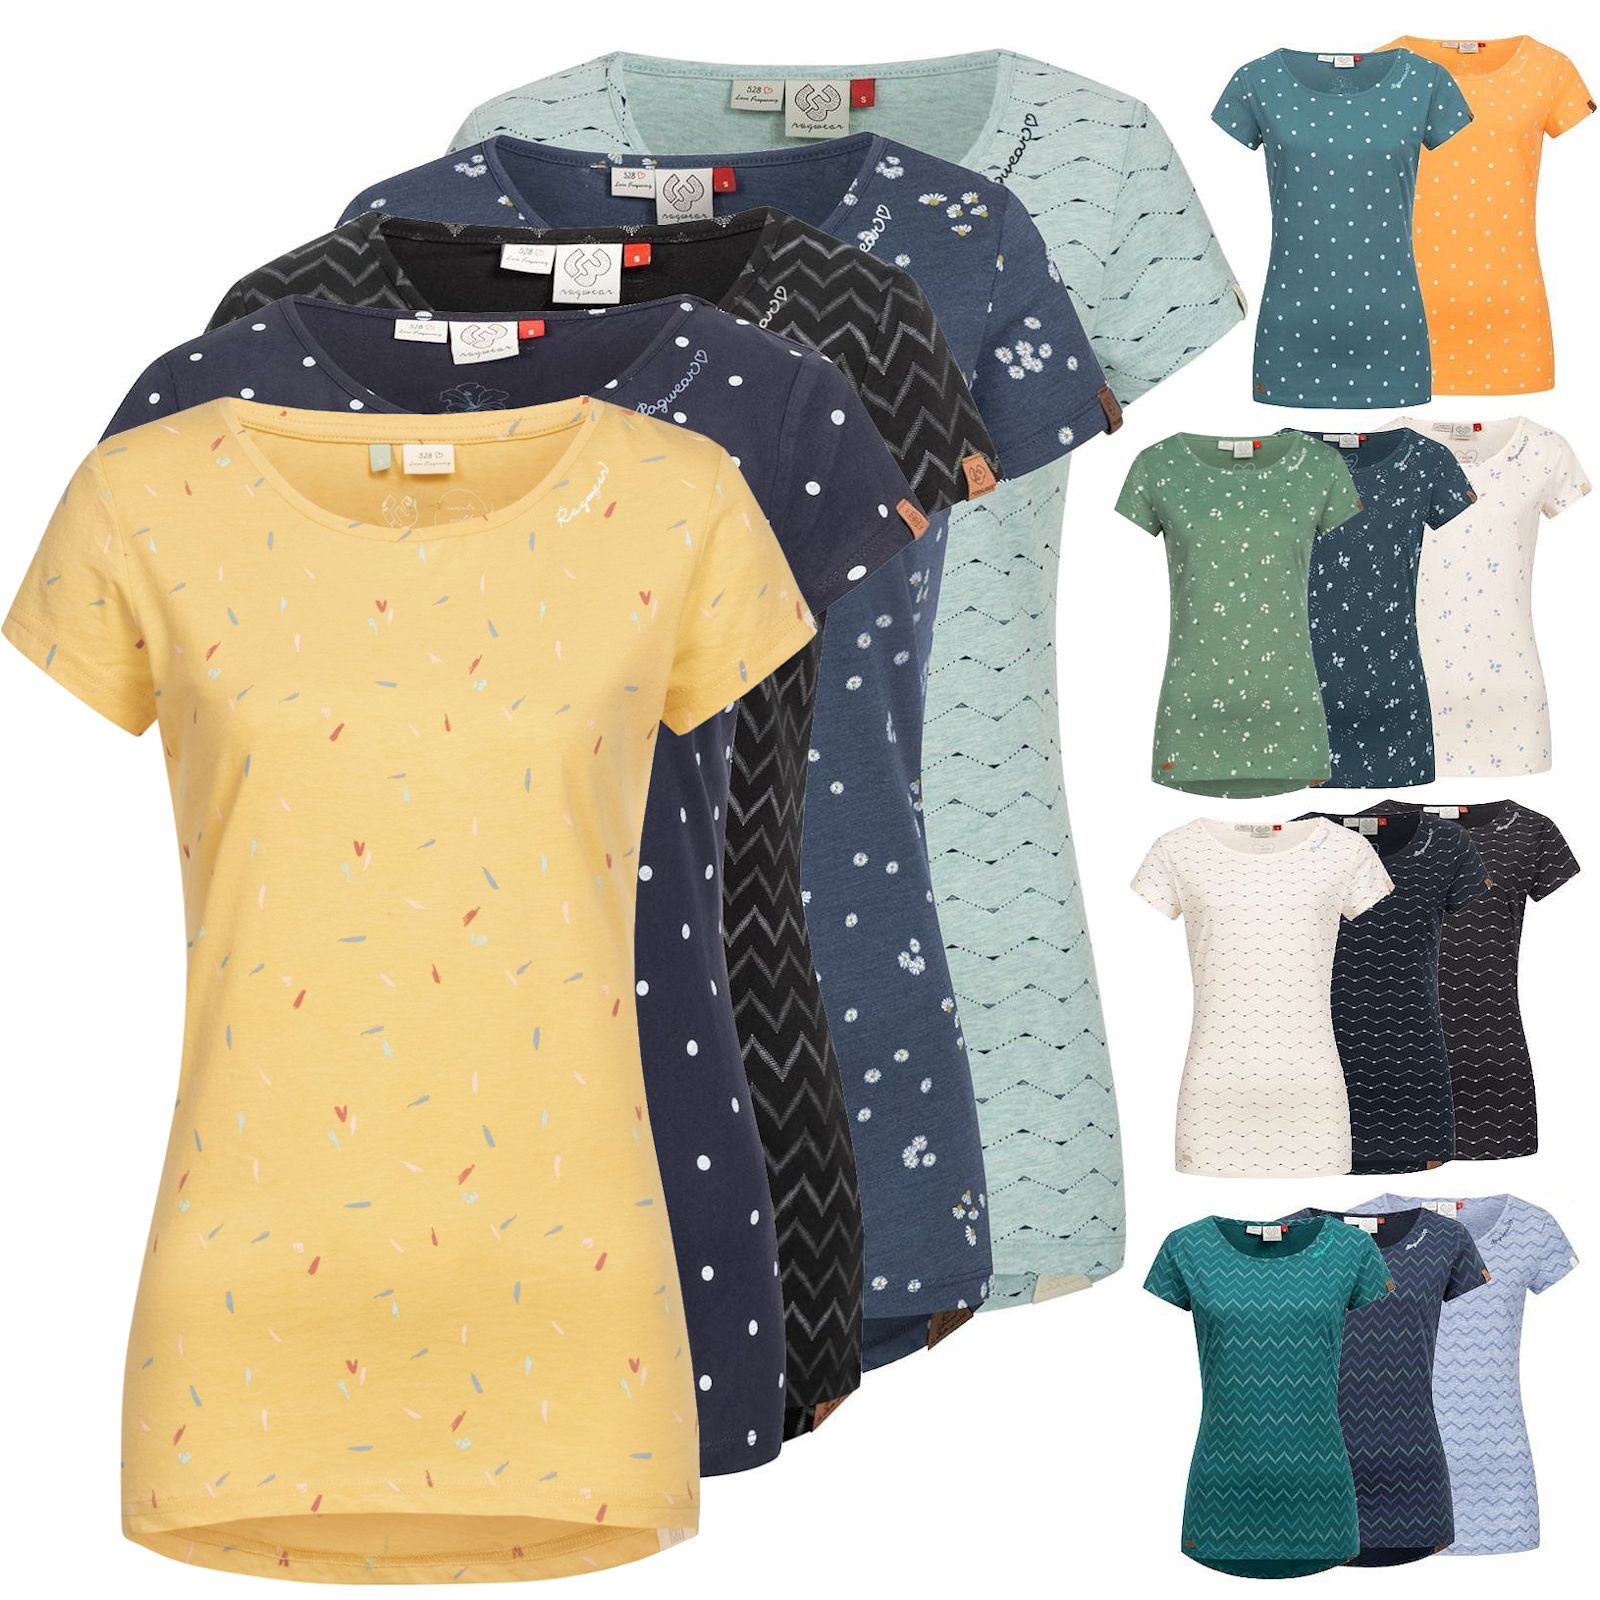 Ragwear Damen T-Shirt Mint | L.E.M.B. Company | Marken Ragwear | Lifestyle